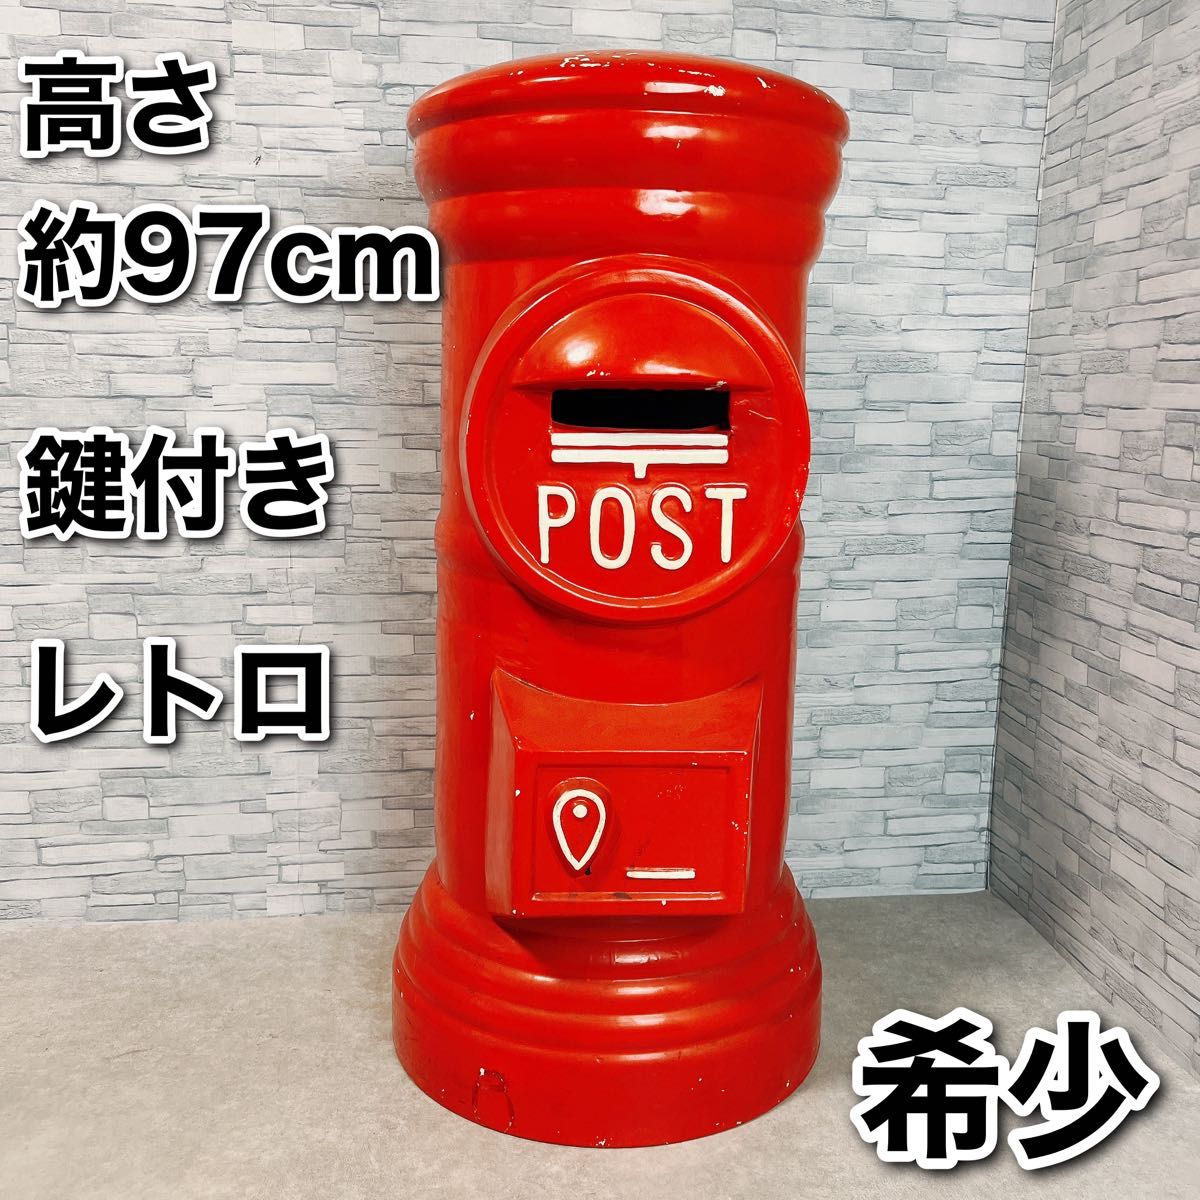 ポスト 郵便ポスト 丸型 高さ97cm レトロ アンティーク コレクション 昭和レトロ 陶器 特大 赤 陶器製